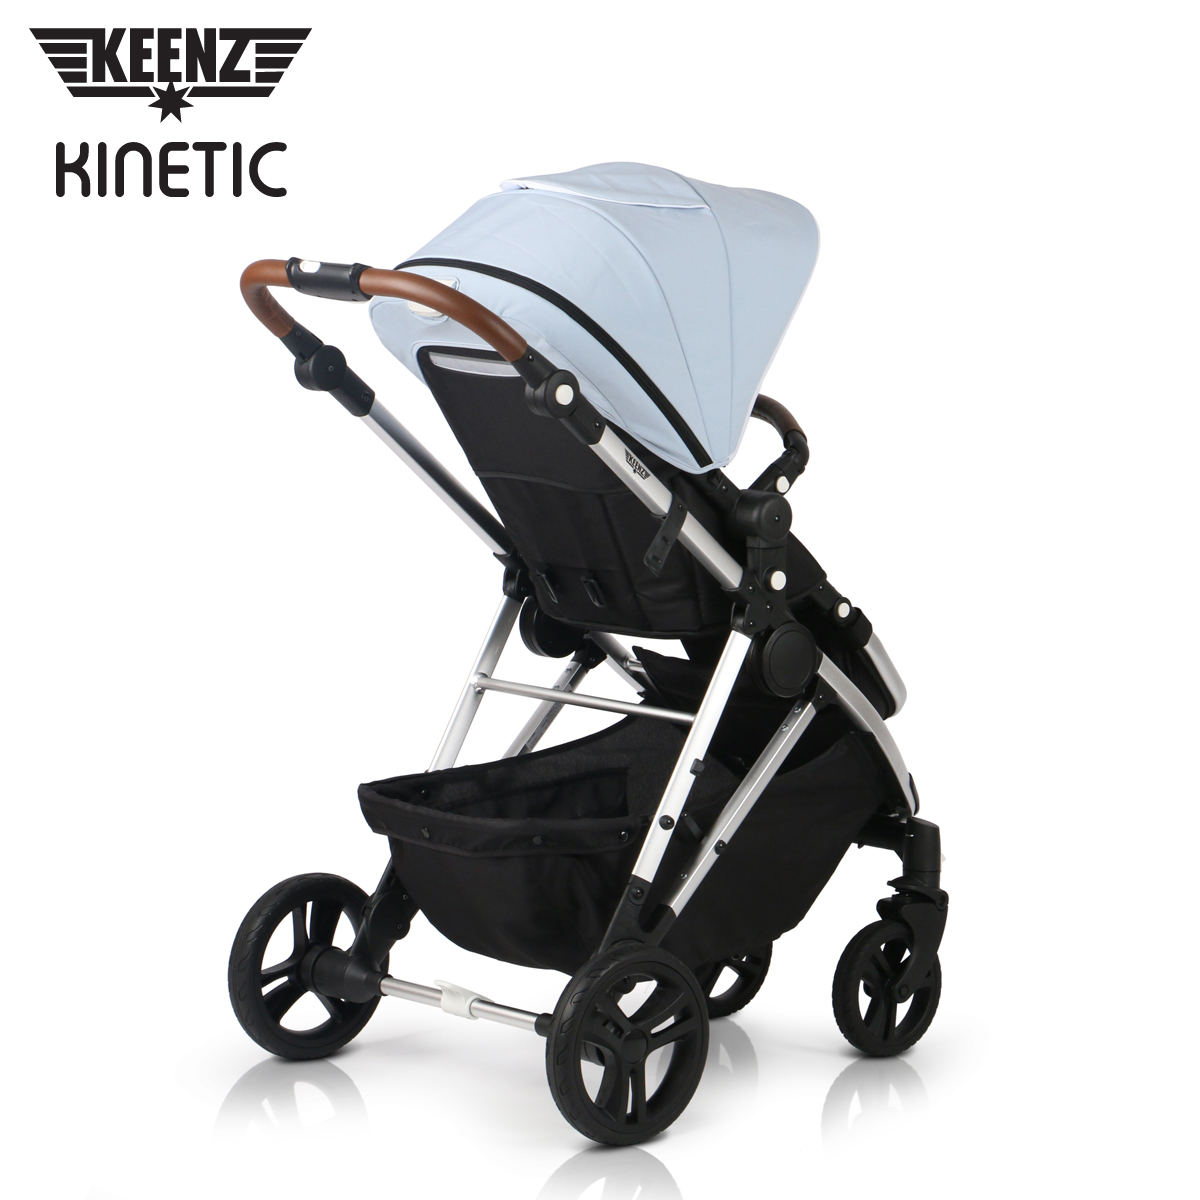 Keenz Kinetic S1 Single Stroller